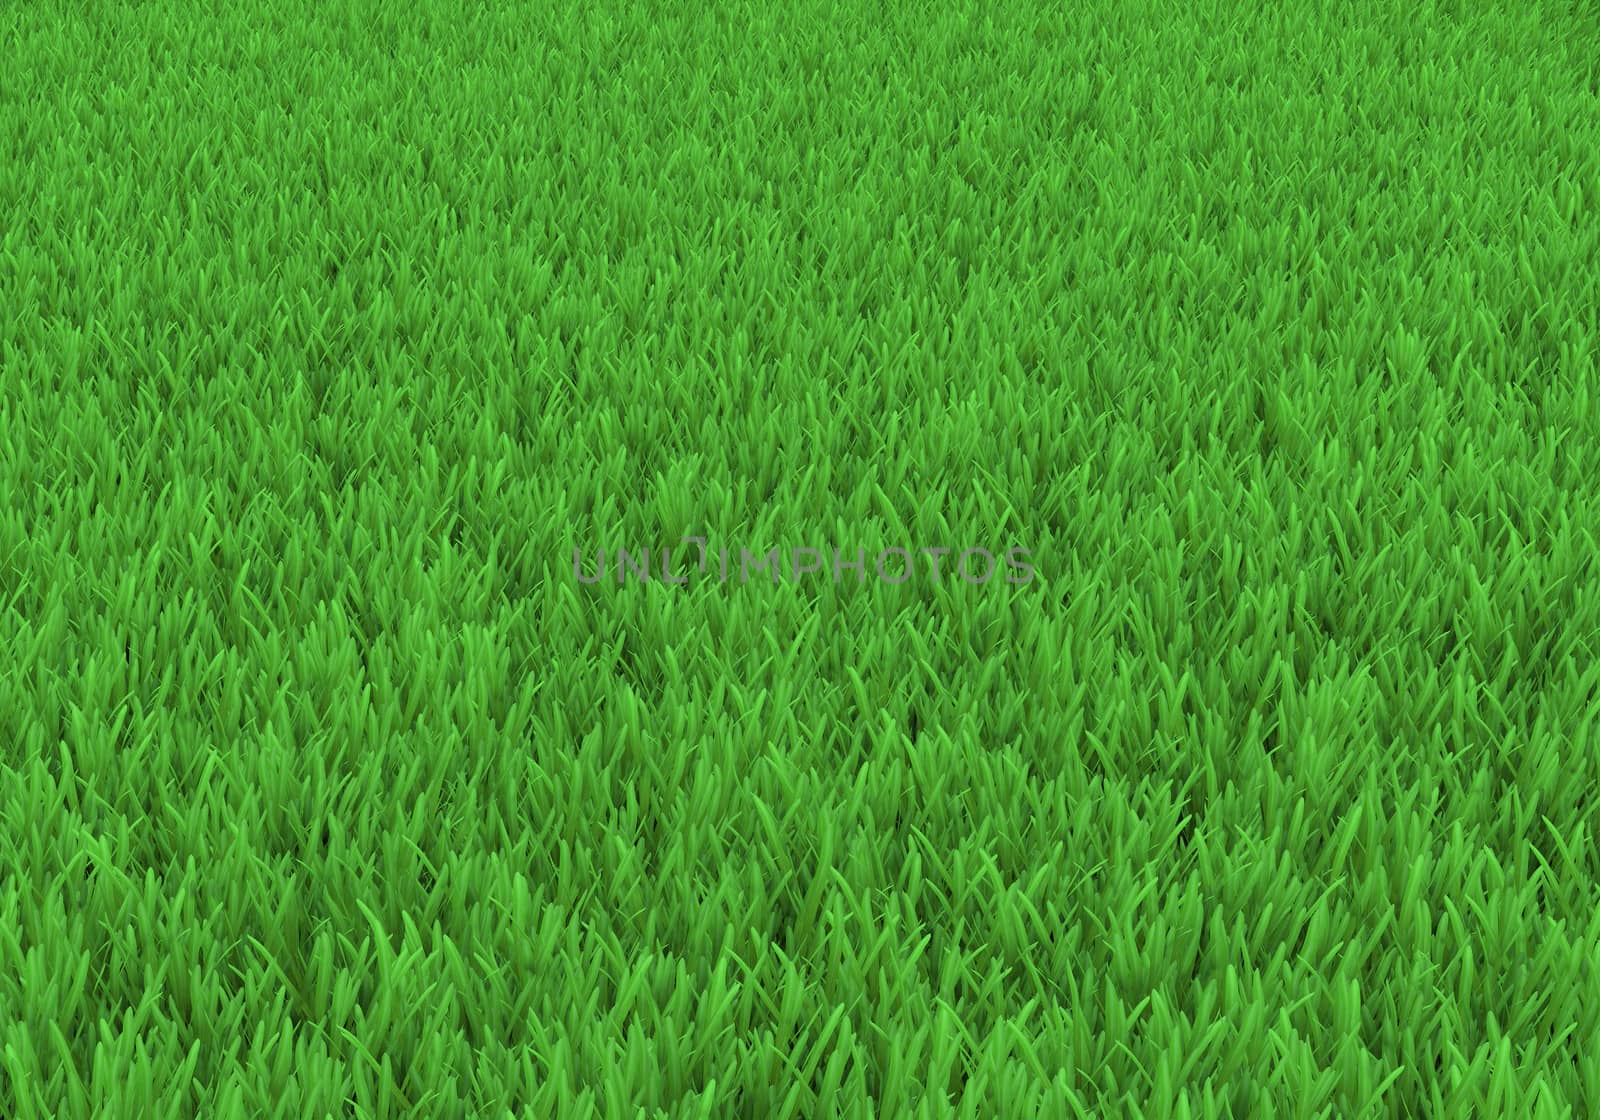 Field of green grass. Background texture, high resolution